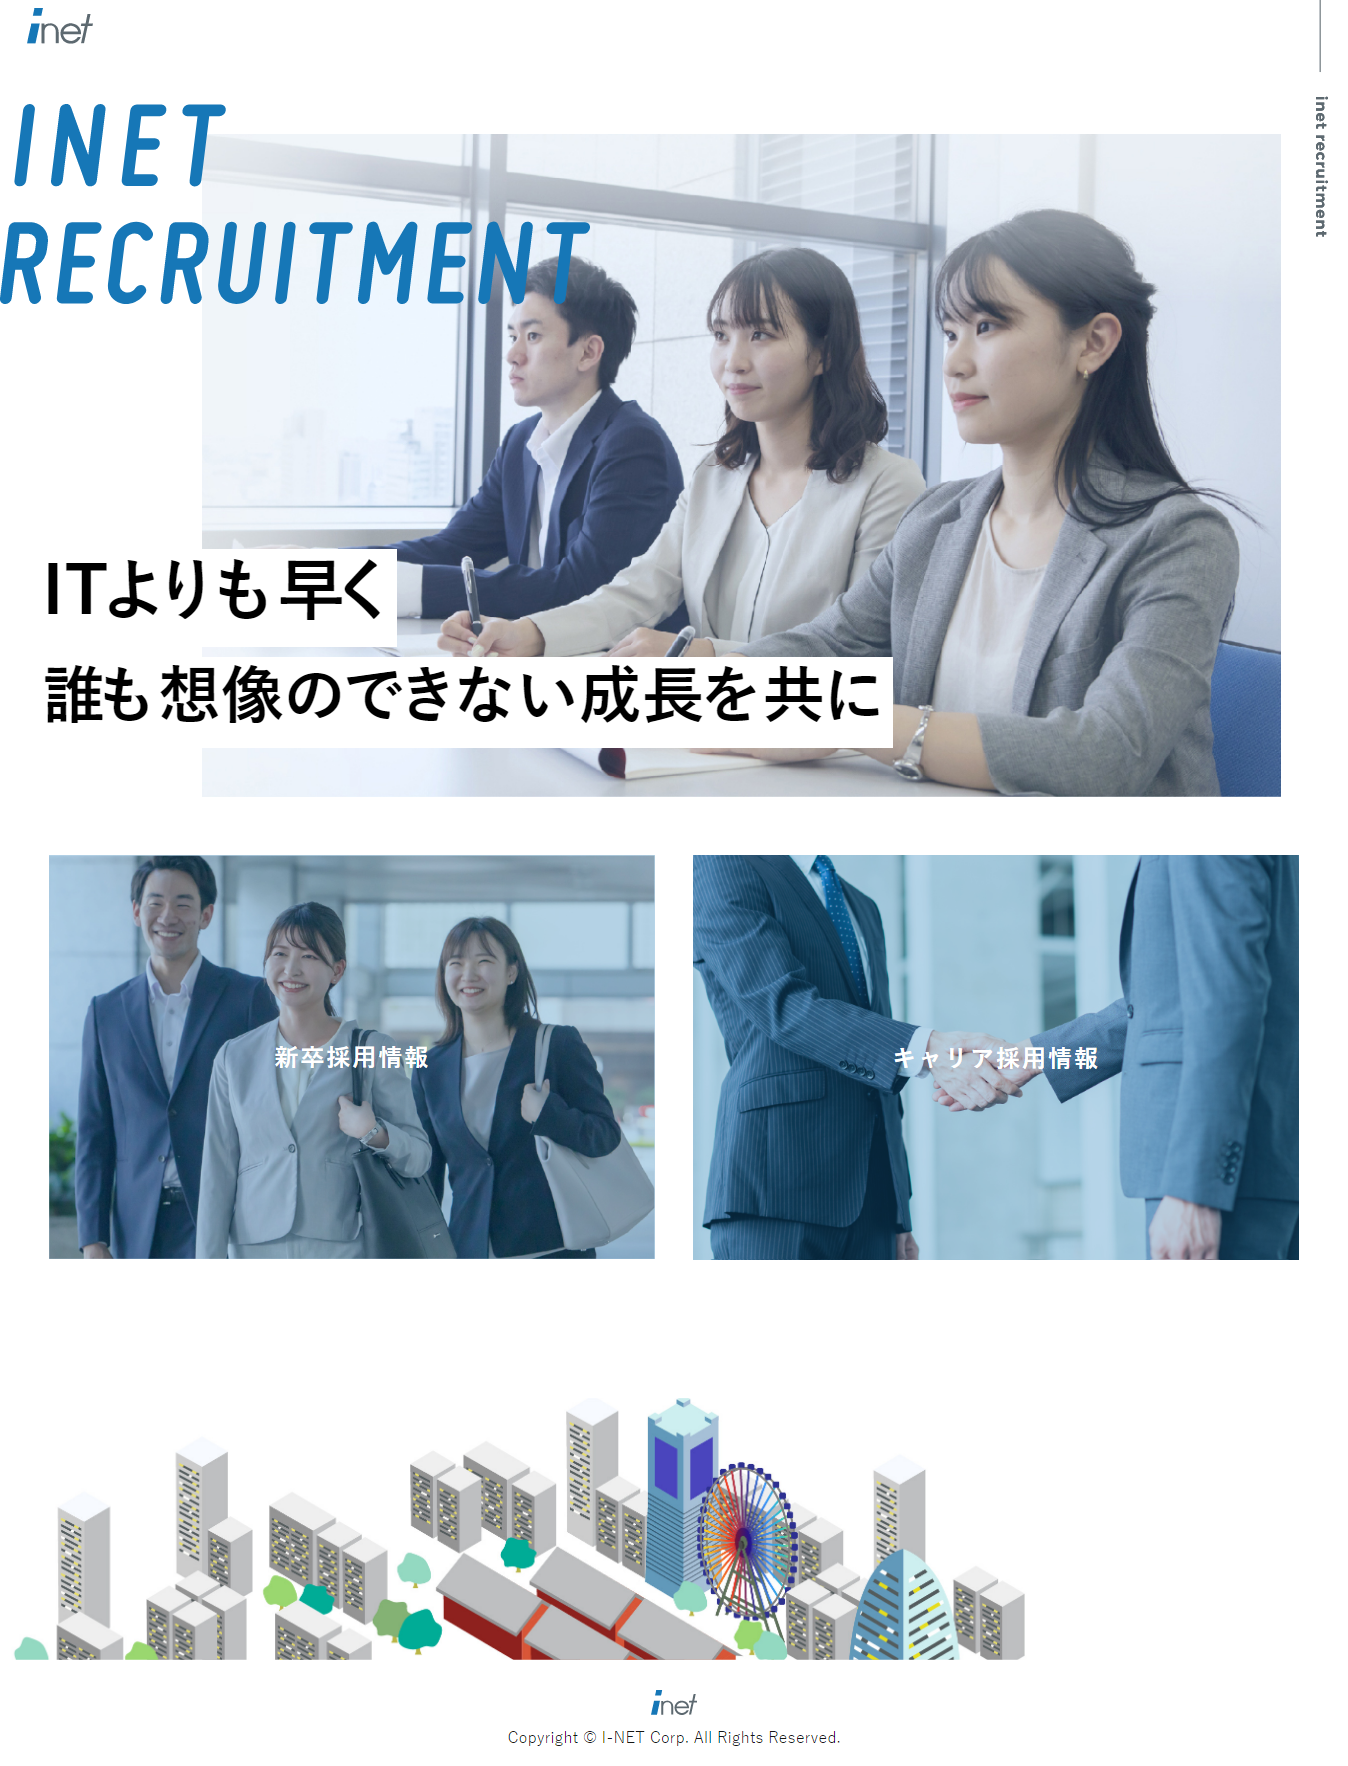 www.inet.co.jp_recruit_.png